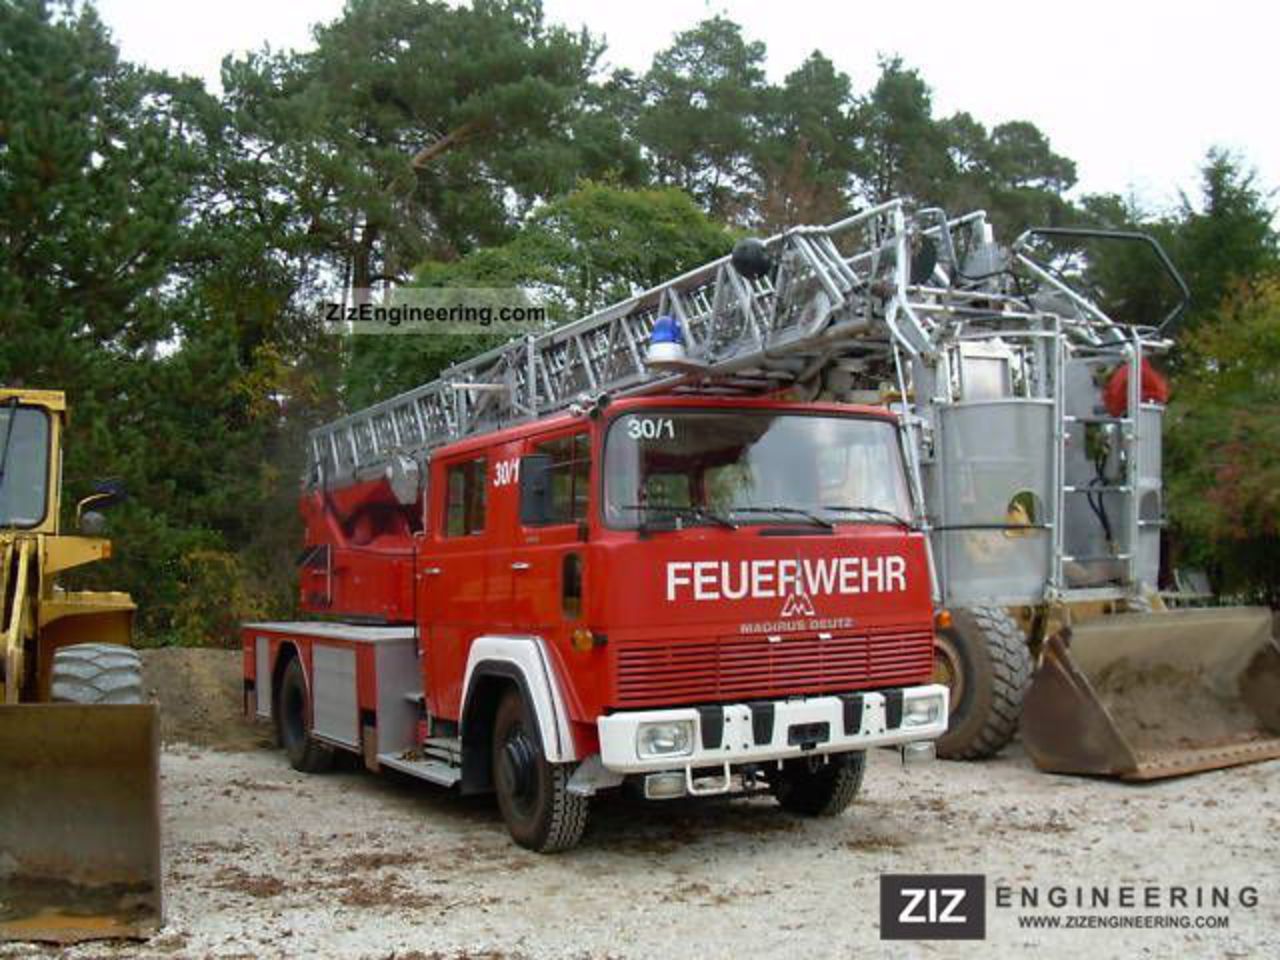 Magirus Deutz Aerial Ladder Fire Truck